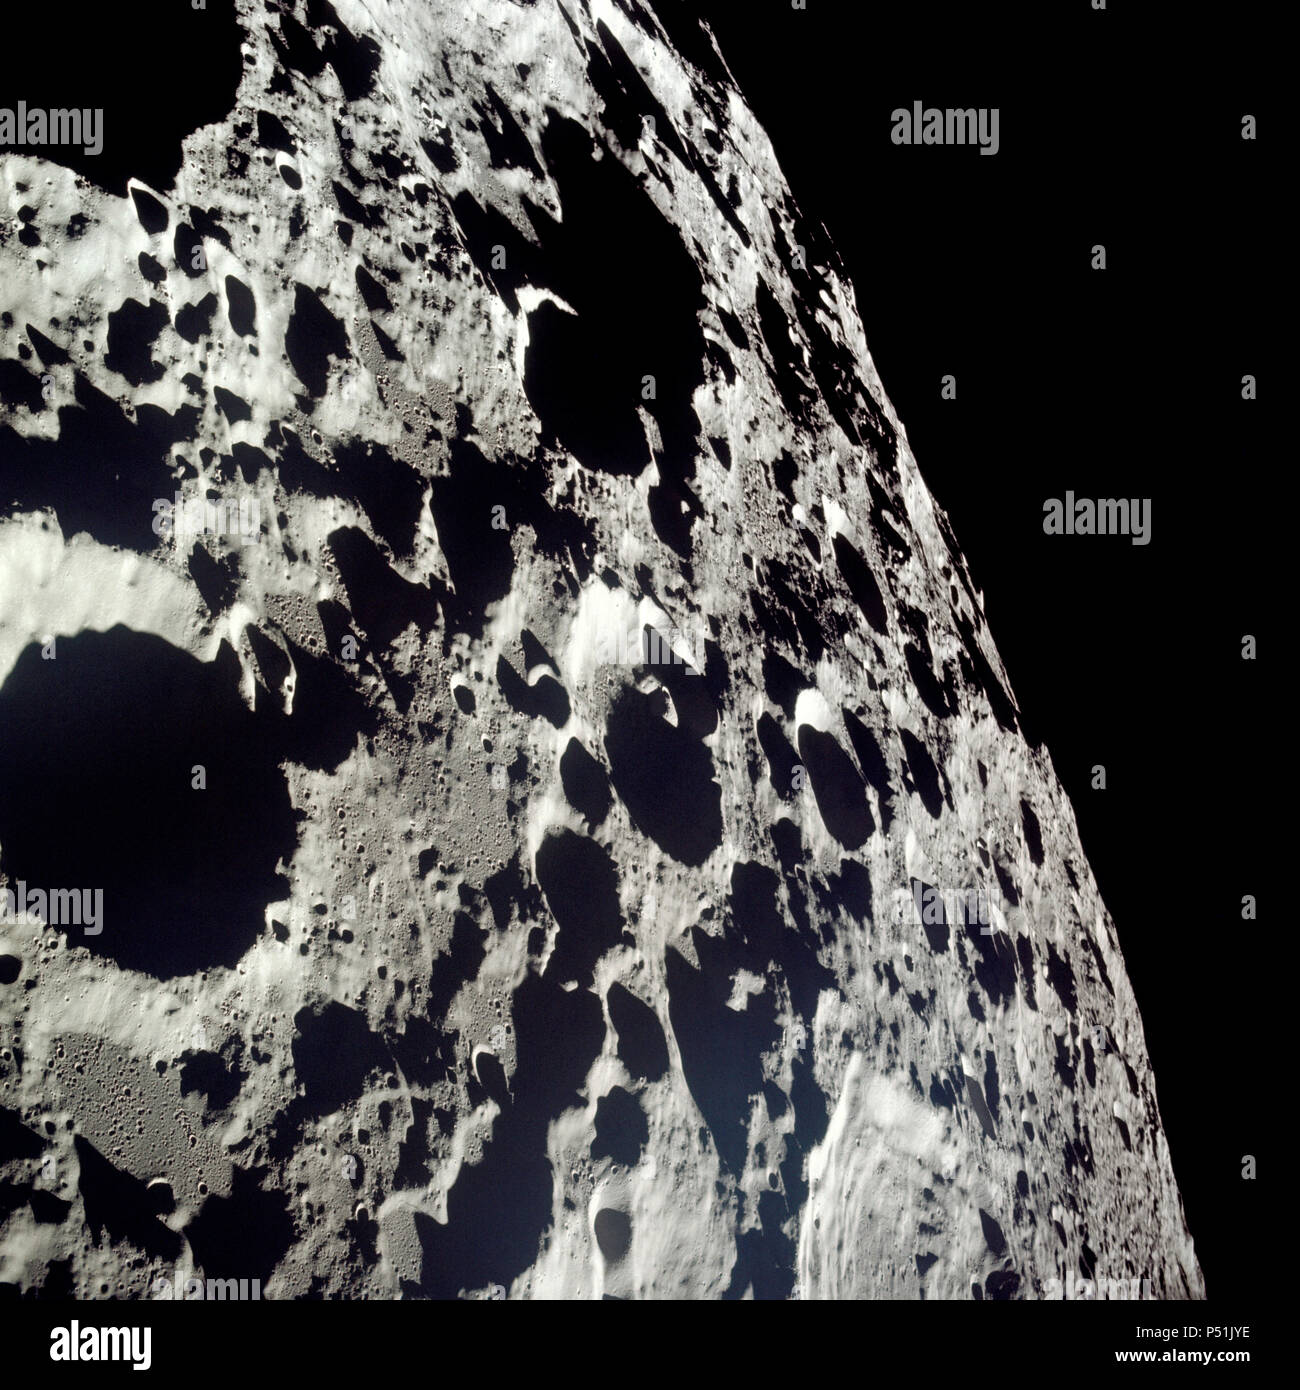 Le terrain accidenté dans cette photographie est typique de la face cachée de la lune. Cette photo a été prise à partir de lunaire Apollo 11 l'engin spatial pendant la mission d'atterrissage lunaire. Banque D'Images